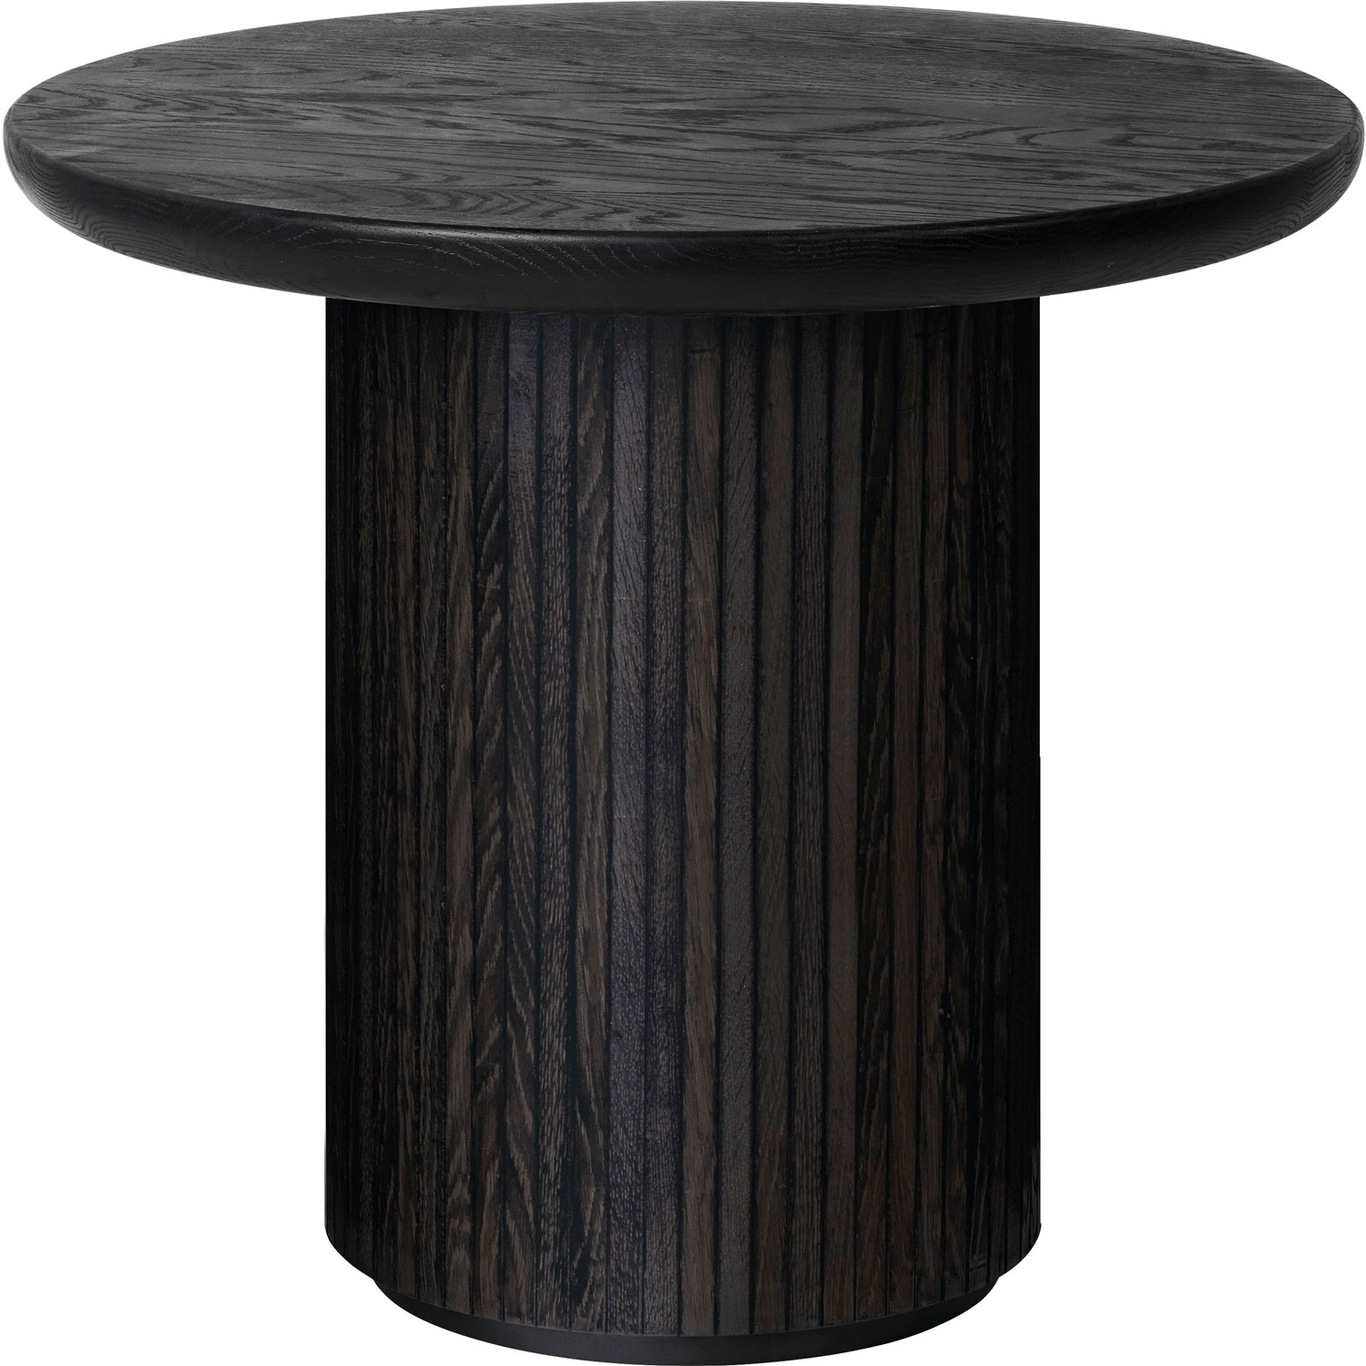 Moon Lounge Table Round Ø60 x H55 cm, Brown Black Oak Veneer